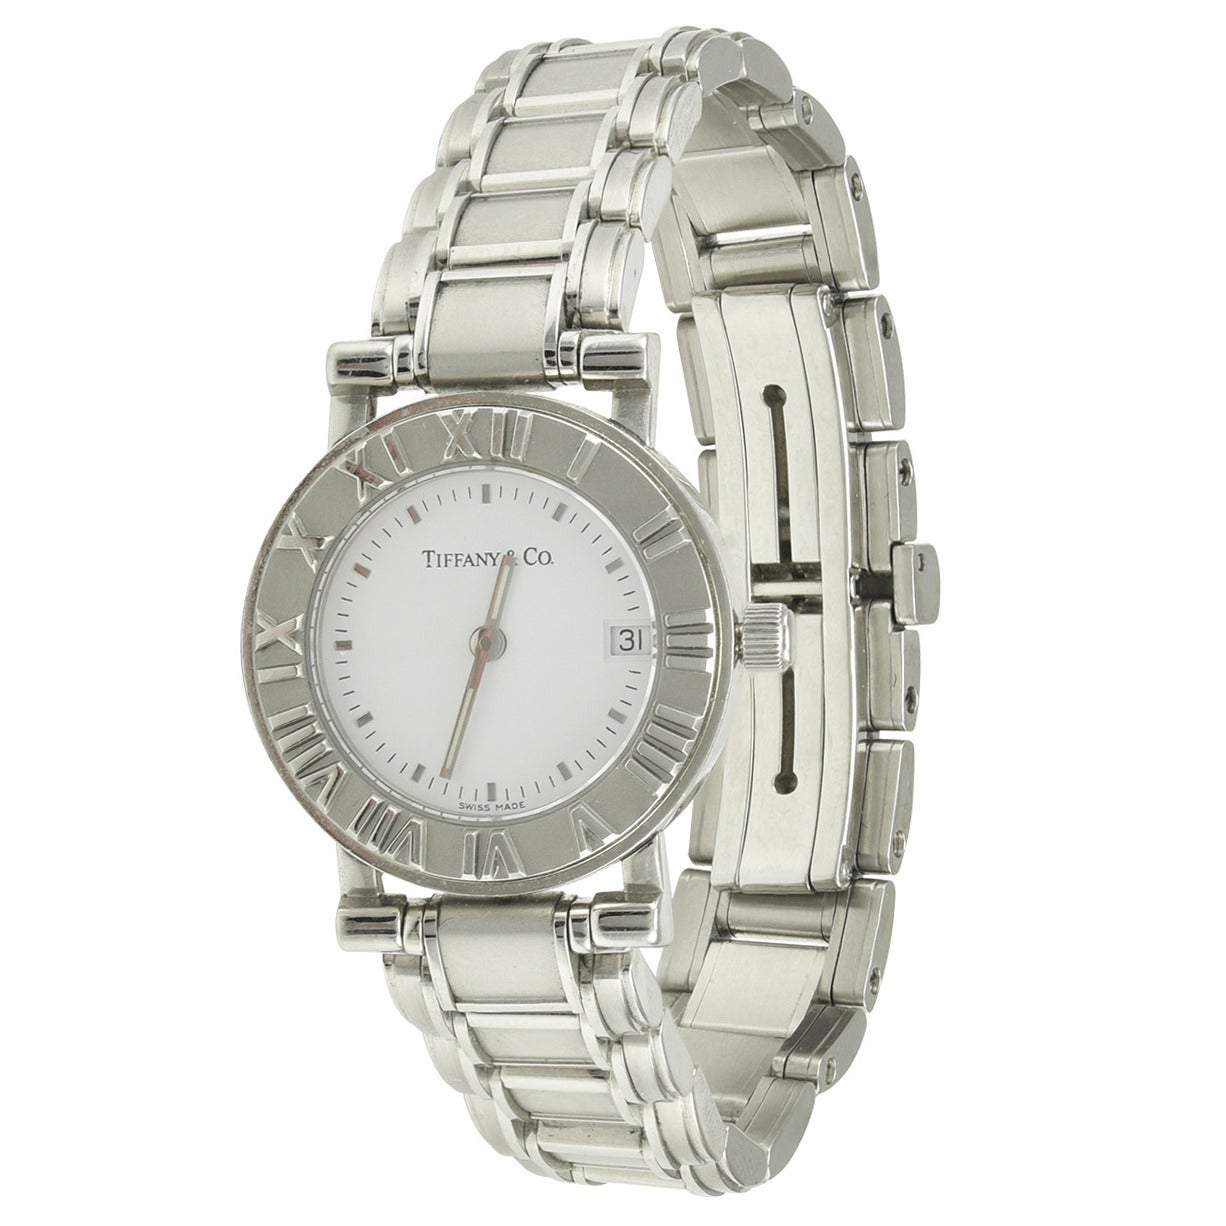 Tiffany & Co. Lady's Stainless Steel Atlas Quartz Wristwatch